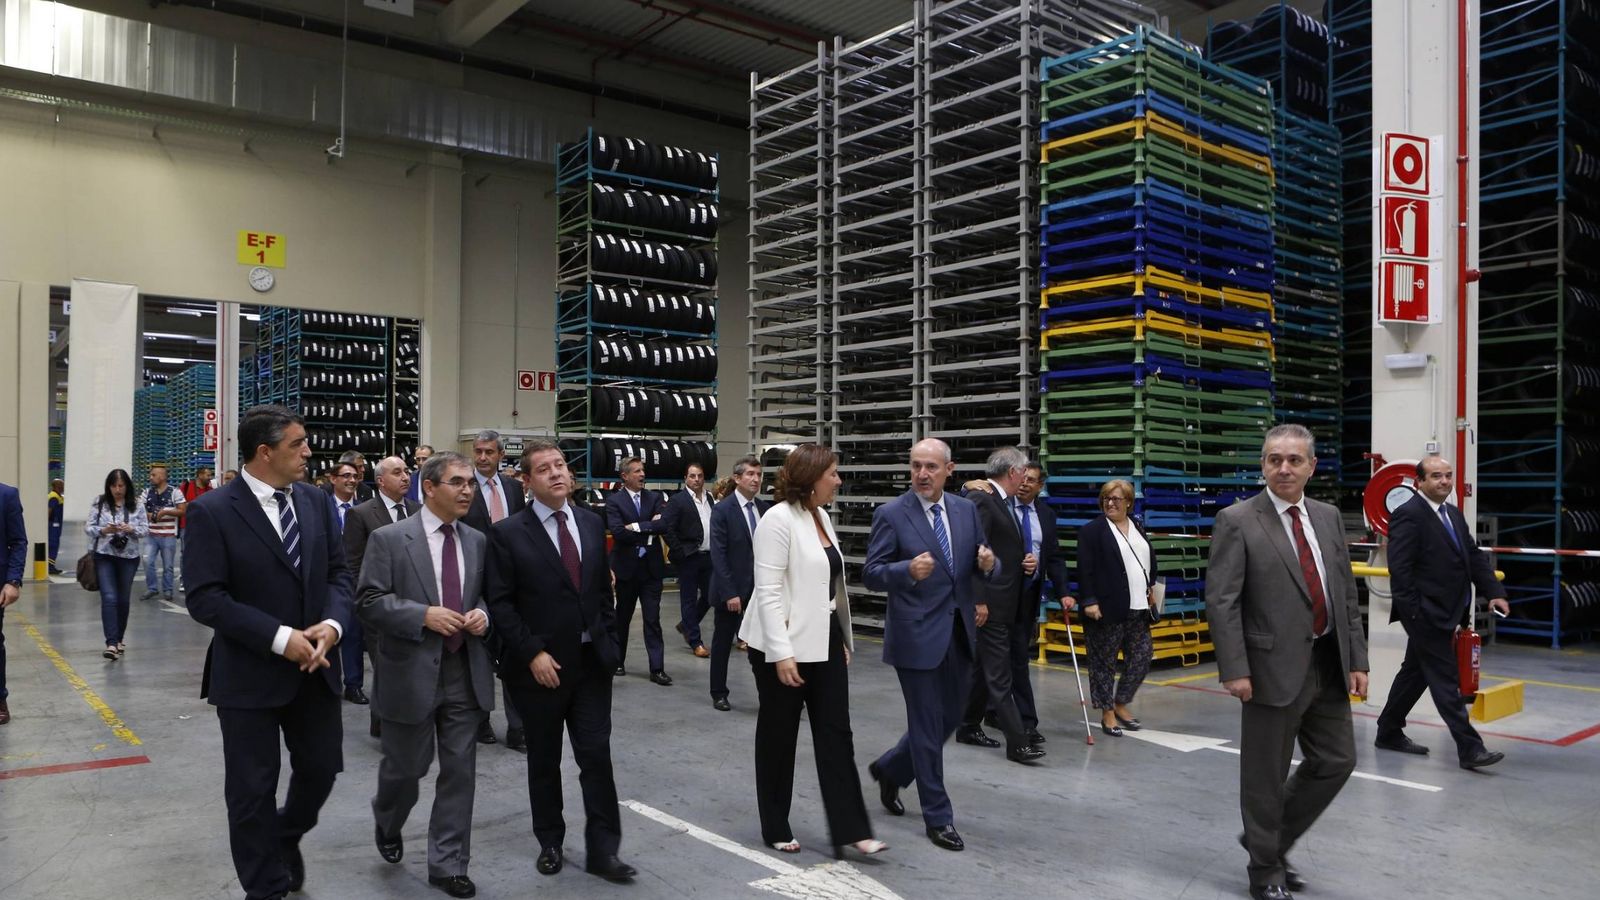 progenie Mutuo equipo Michelin inaugura un almacén de 52.000 m2 en Illescas